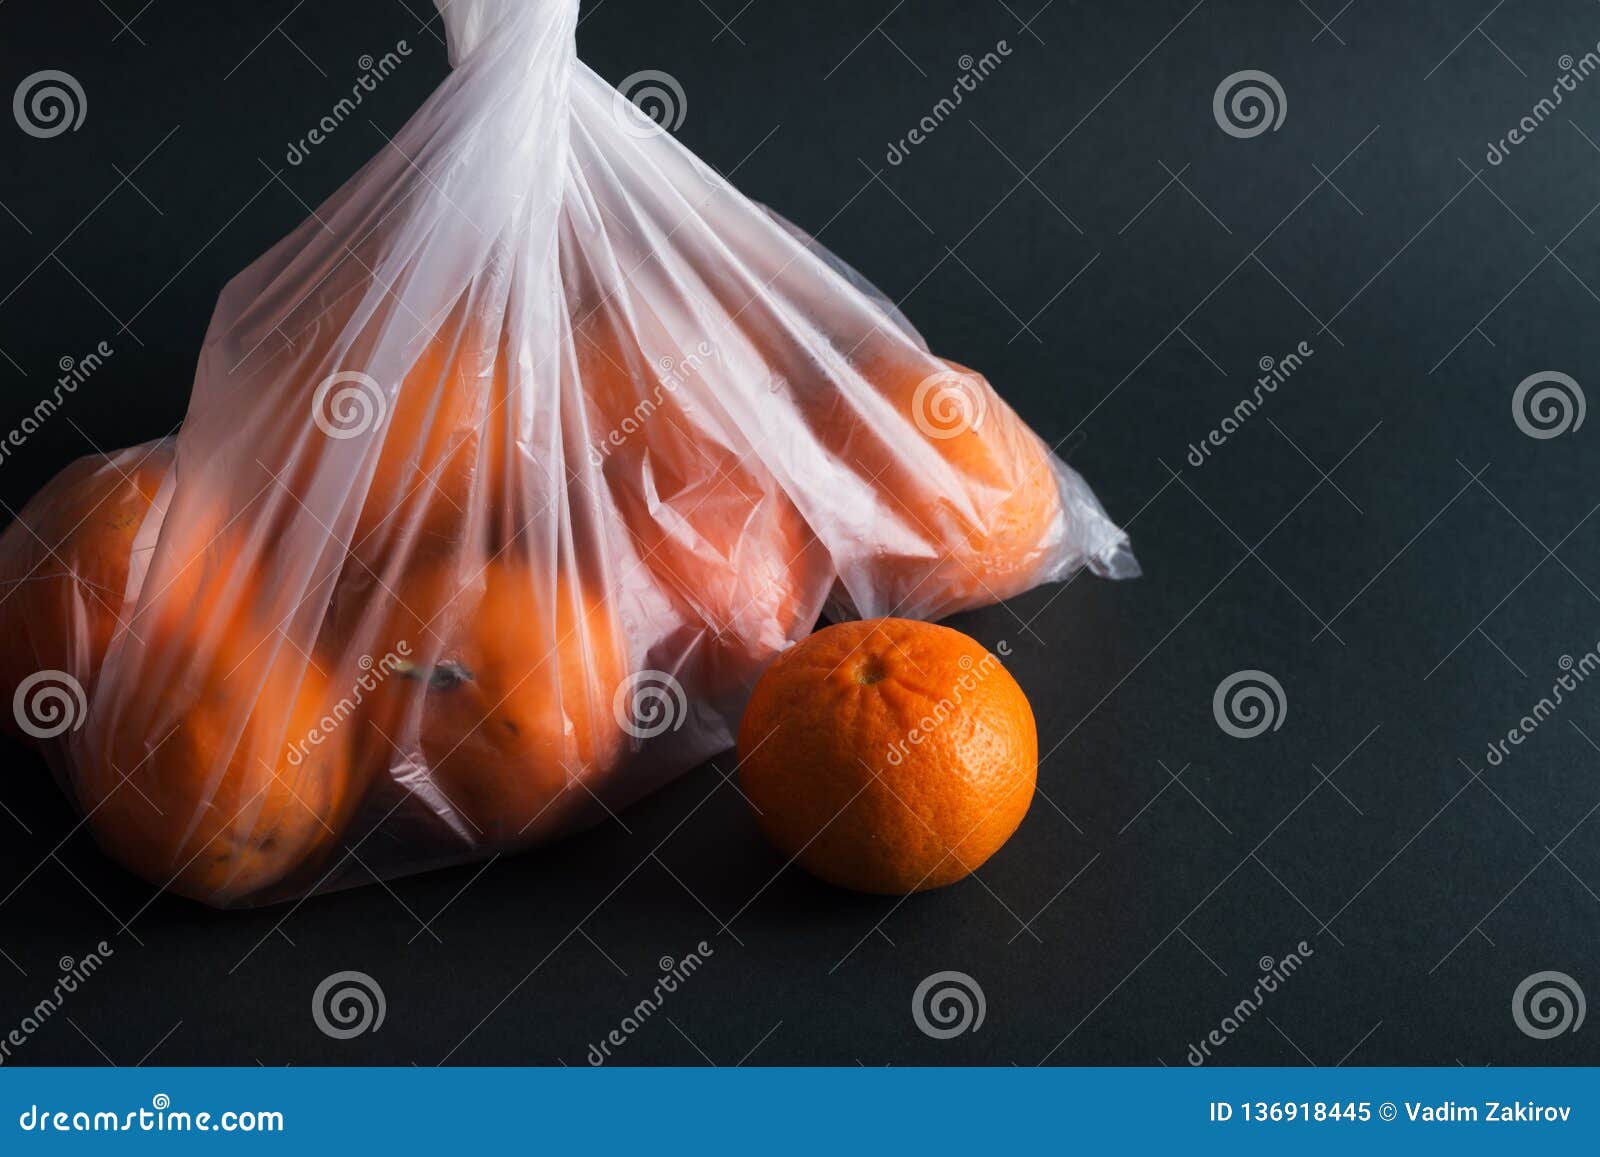 В пакете лежала мандарина. Мандарины в пакете. Апельсины в пакете. Фрукты в целлофановом пакете. Пакет мандаринов.